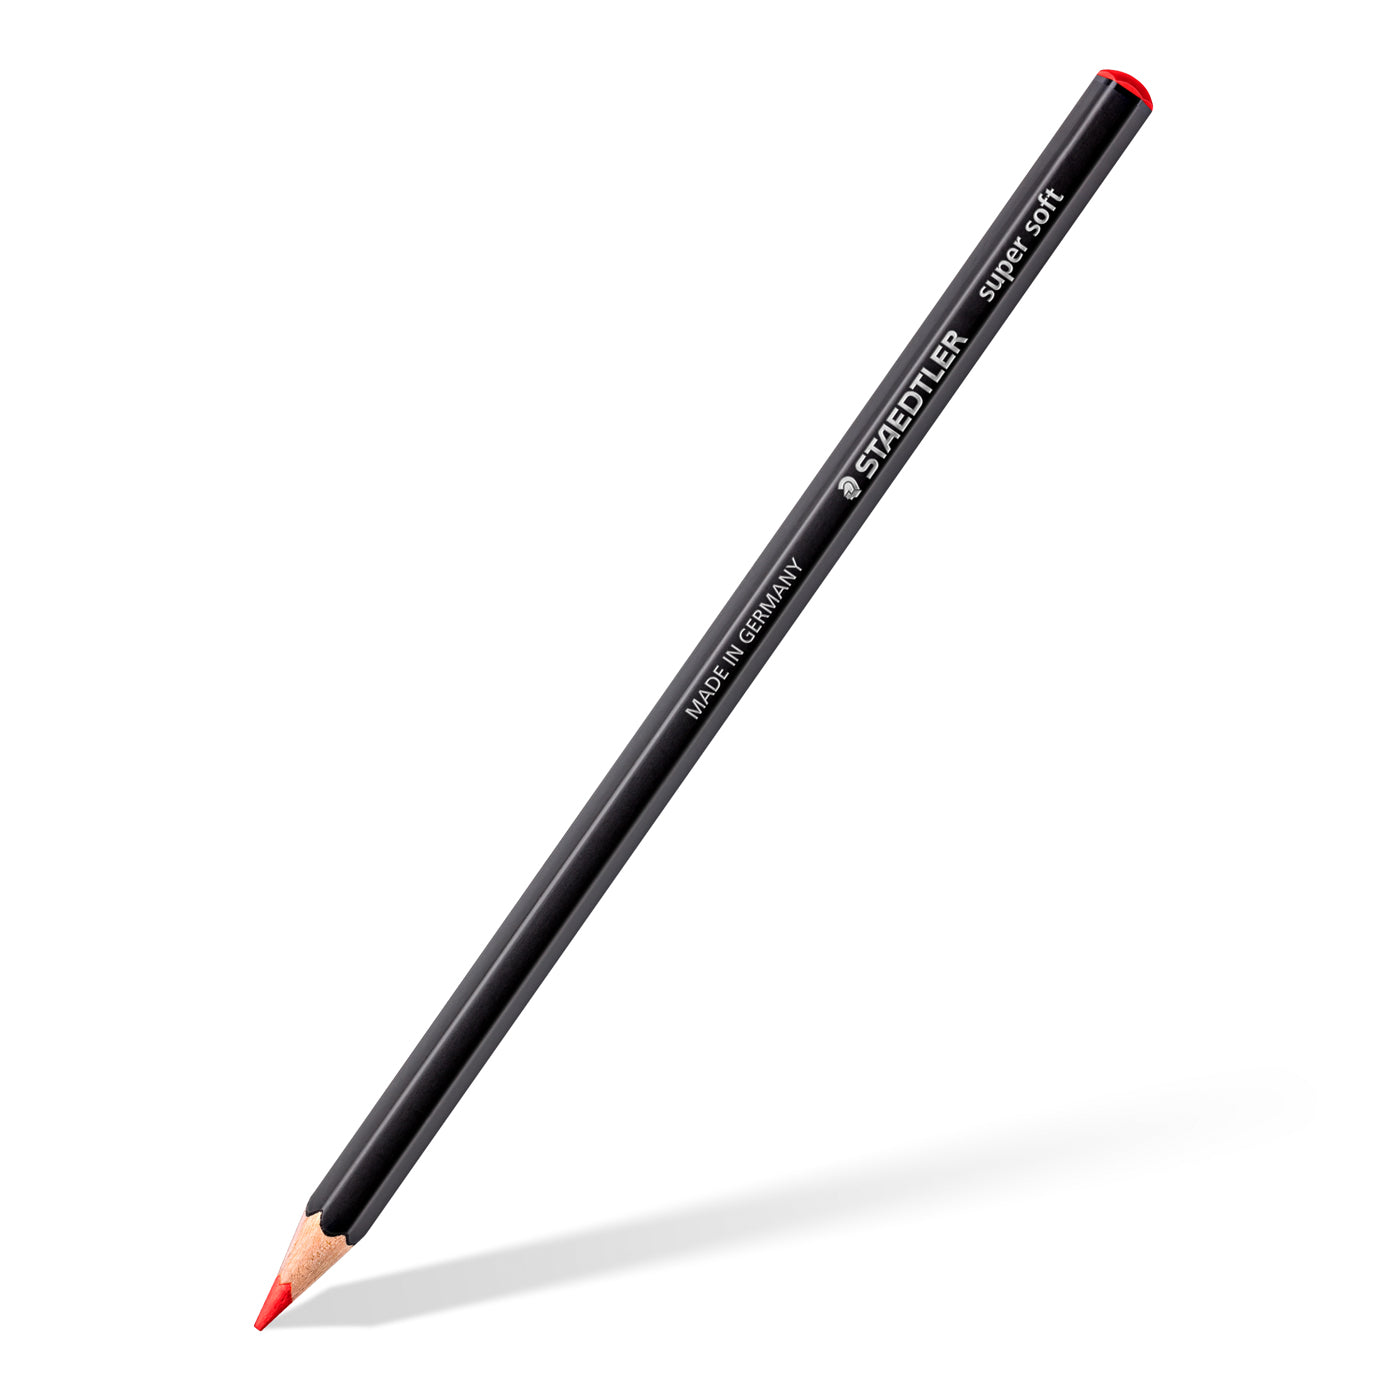 Staedtler Super-Soft Coloured Pencils 149C C12 Design Journey 12 Shades